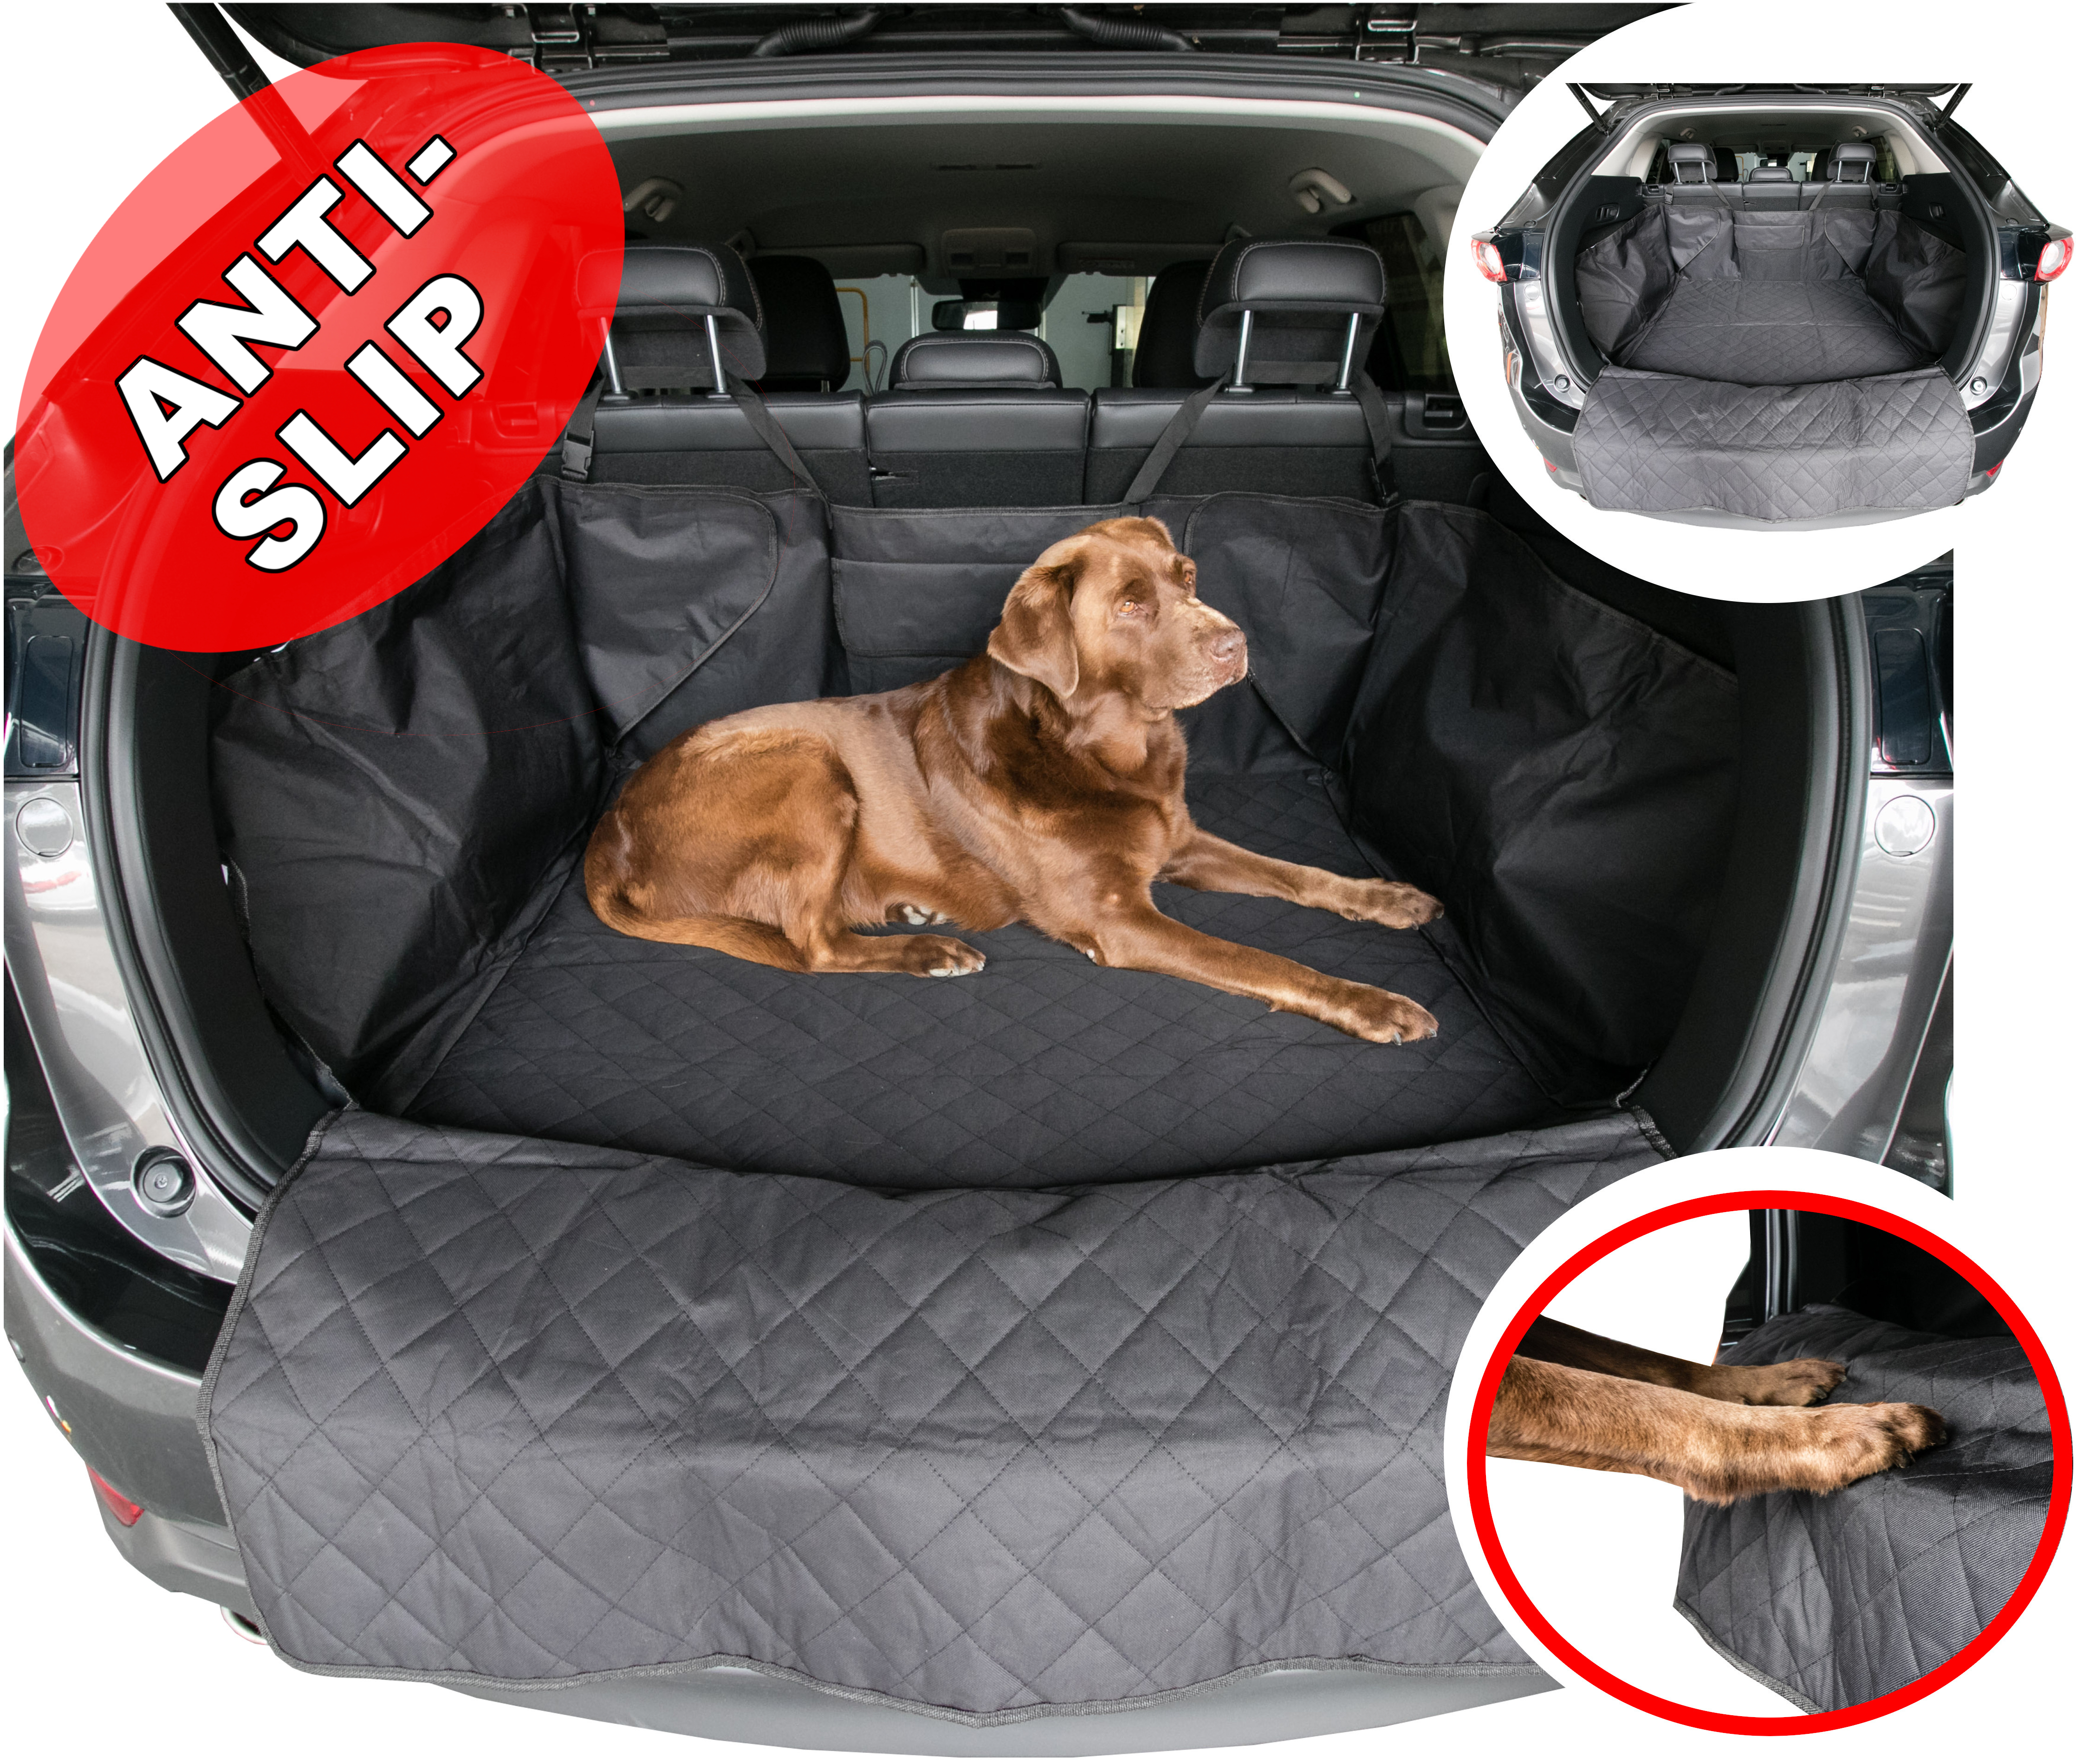 Doggy Kofferraummate Kofferraumschatz für Kofferraum und anti-rutsch mit fixcape gepolstert SUV, Kombi wasserdicht Hund, Ladekantenschutz Hundedecke und